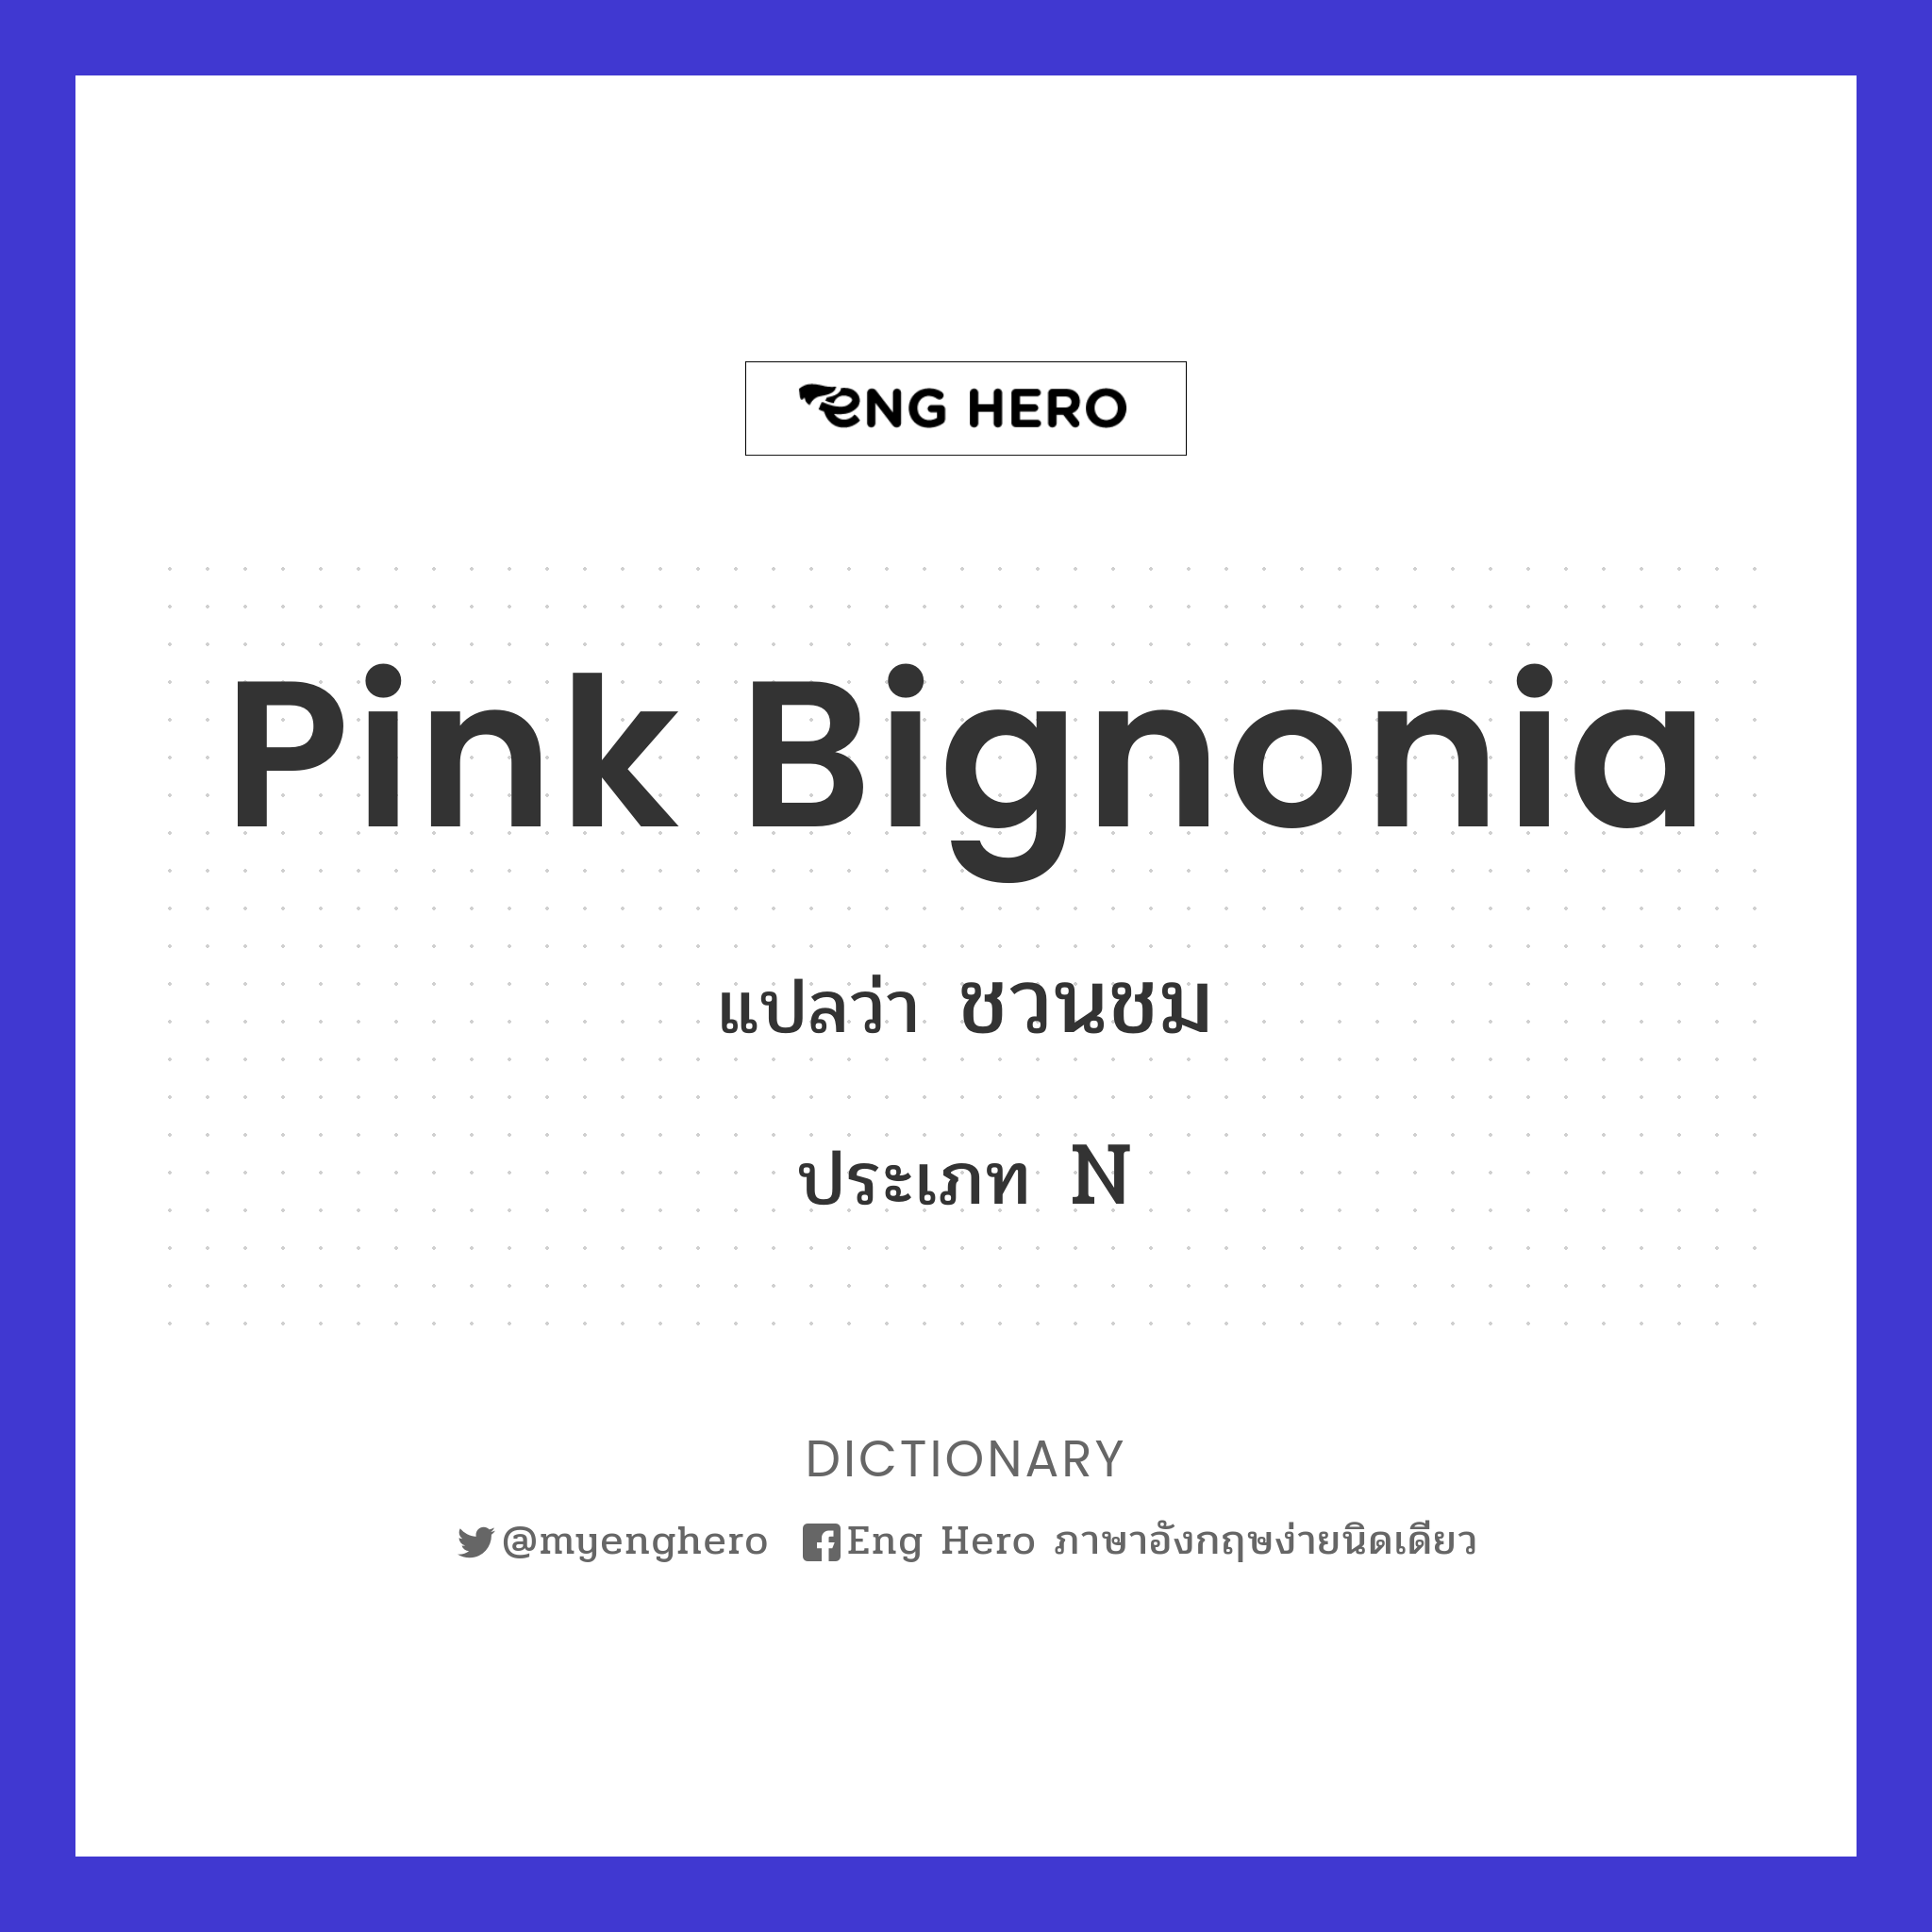 Pink Bignonia